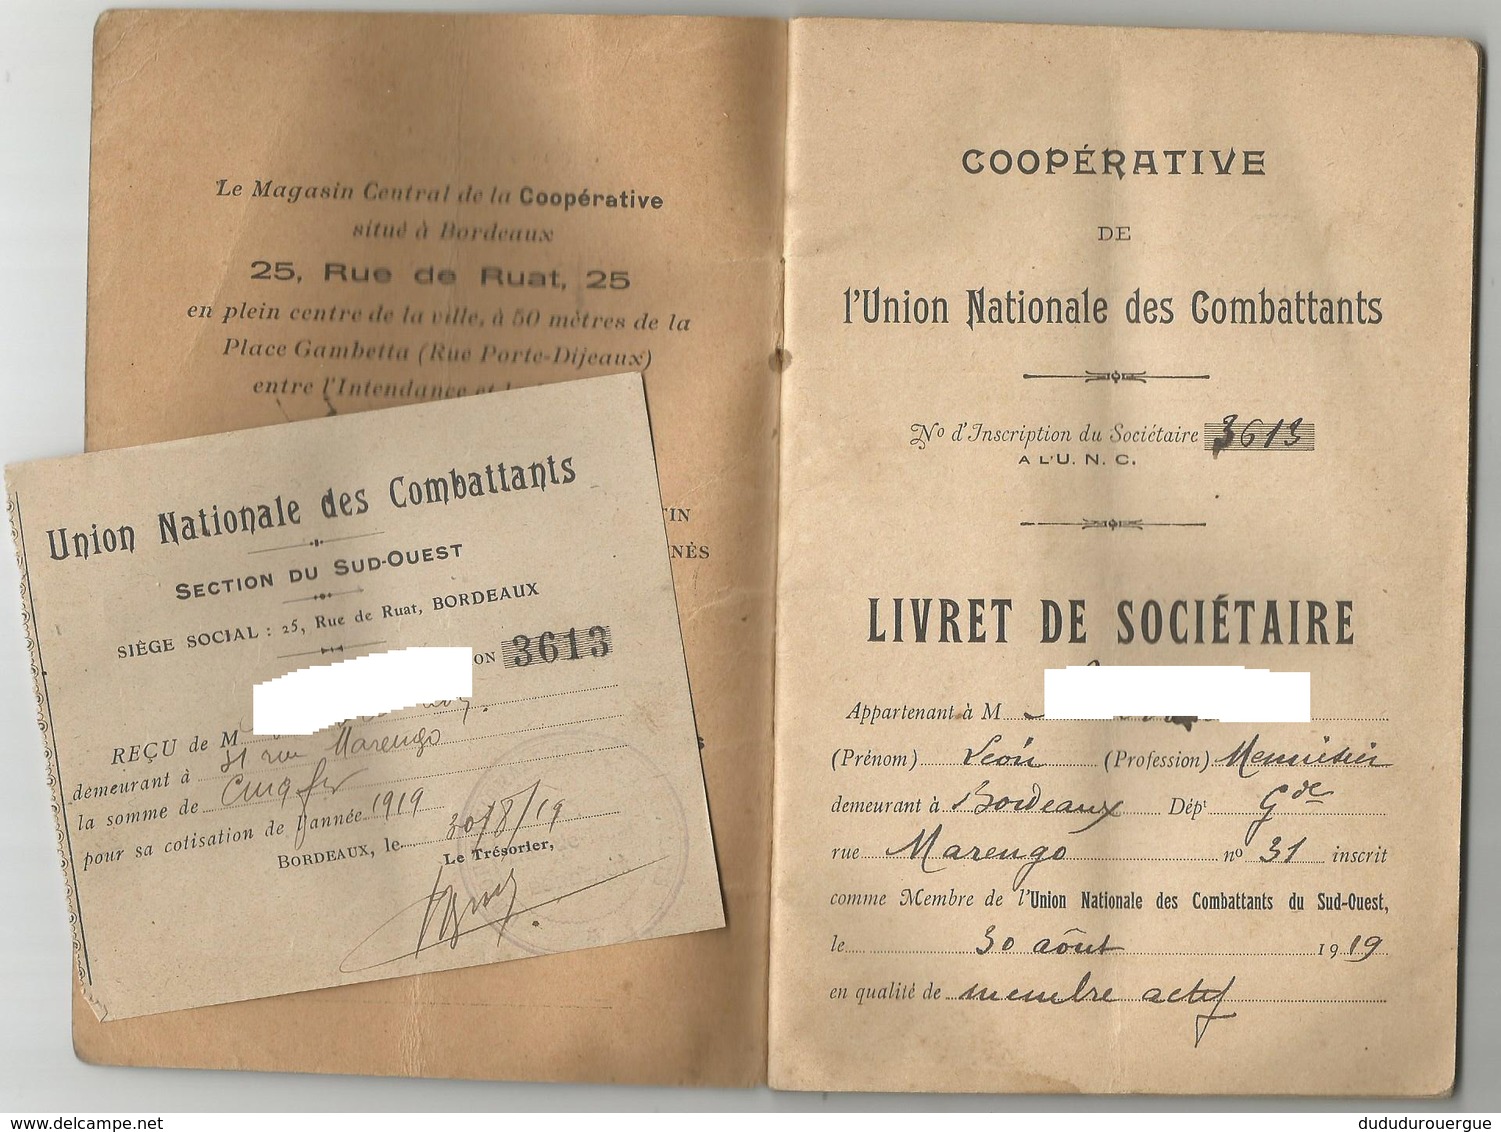 COOPERATIVE DE L UNION NATIONALE DES COMBATTANTS DU SUD - OUEST - Documents